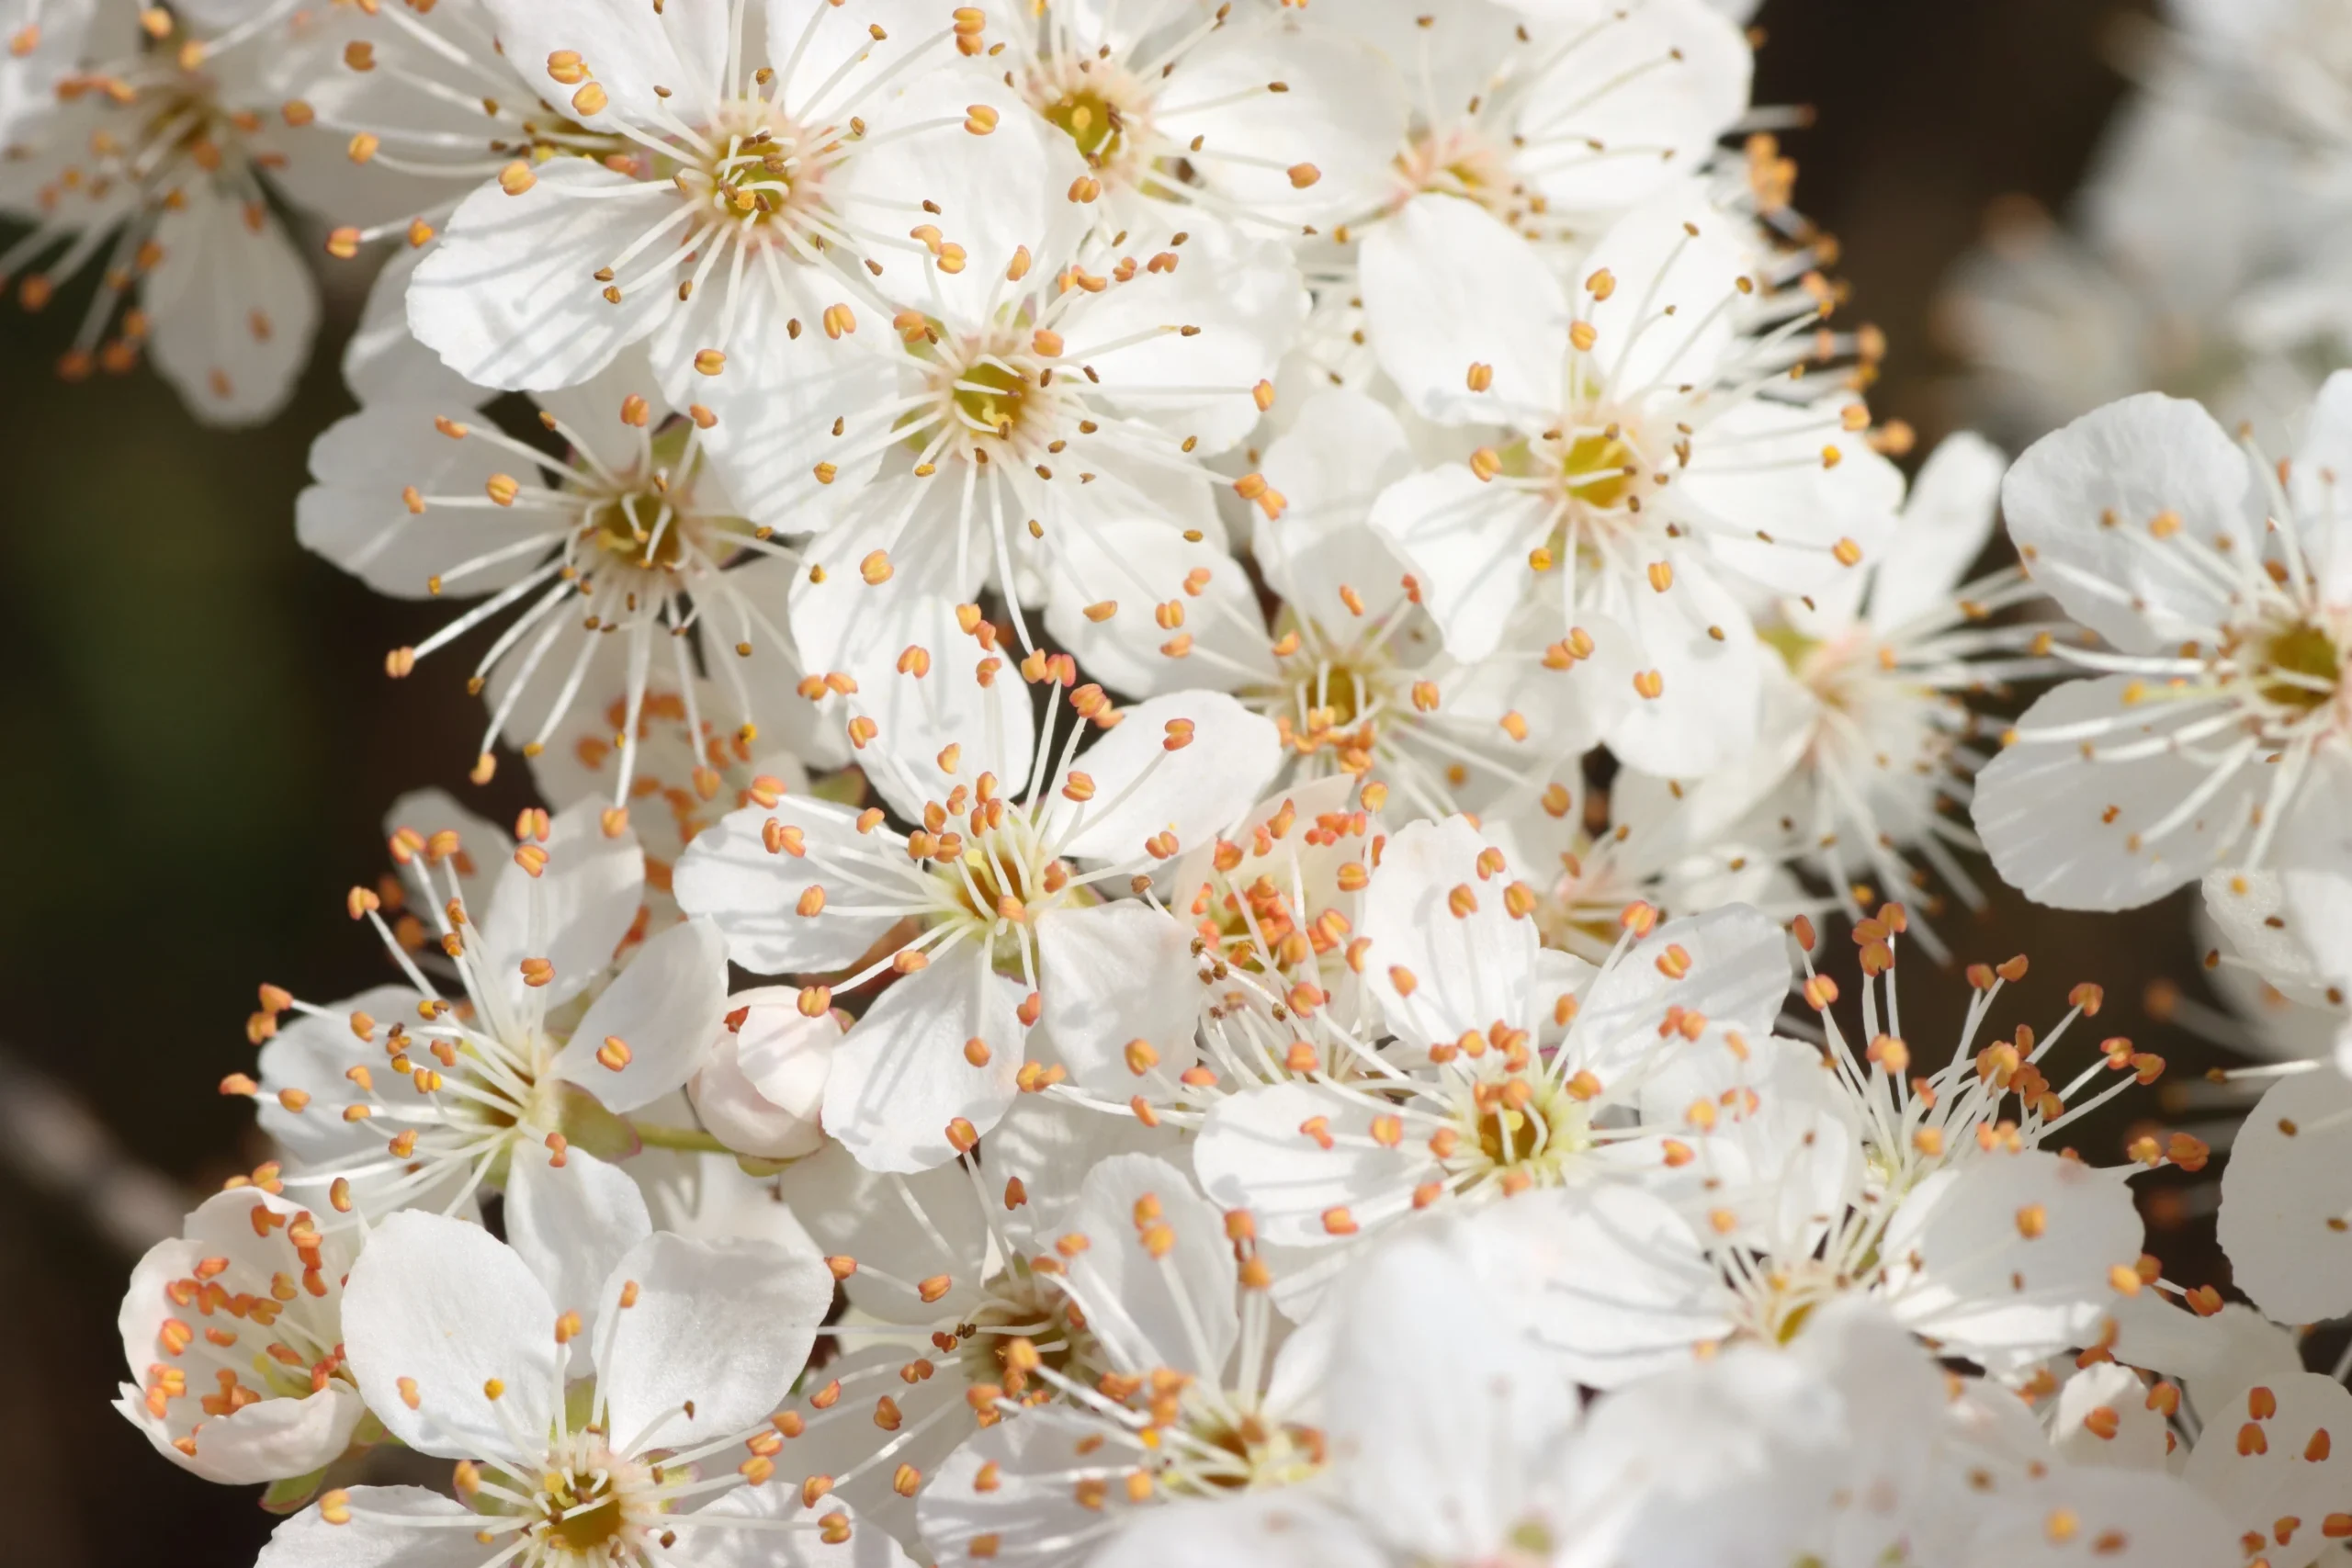 Kirschpflaume - weiße Blüten in der Mitte des Bildes mit orangenen Staubblättern die aus den Blüten herausstehen.